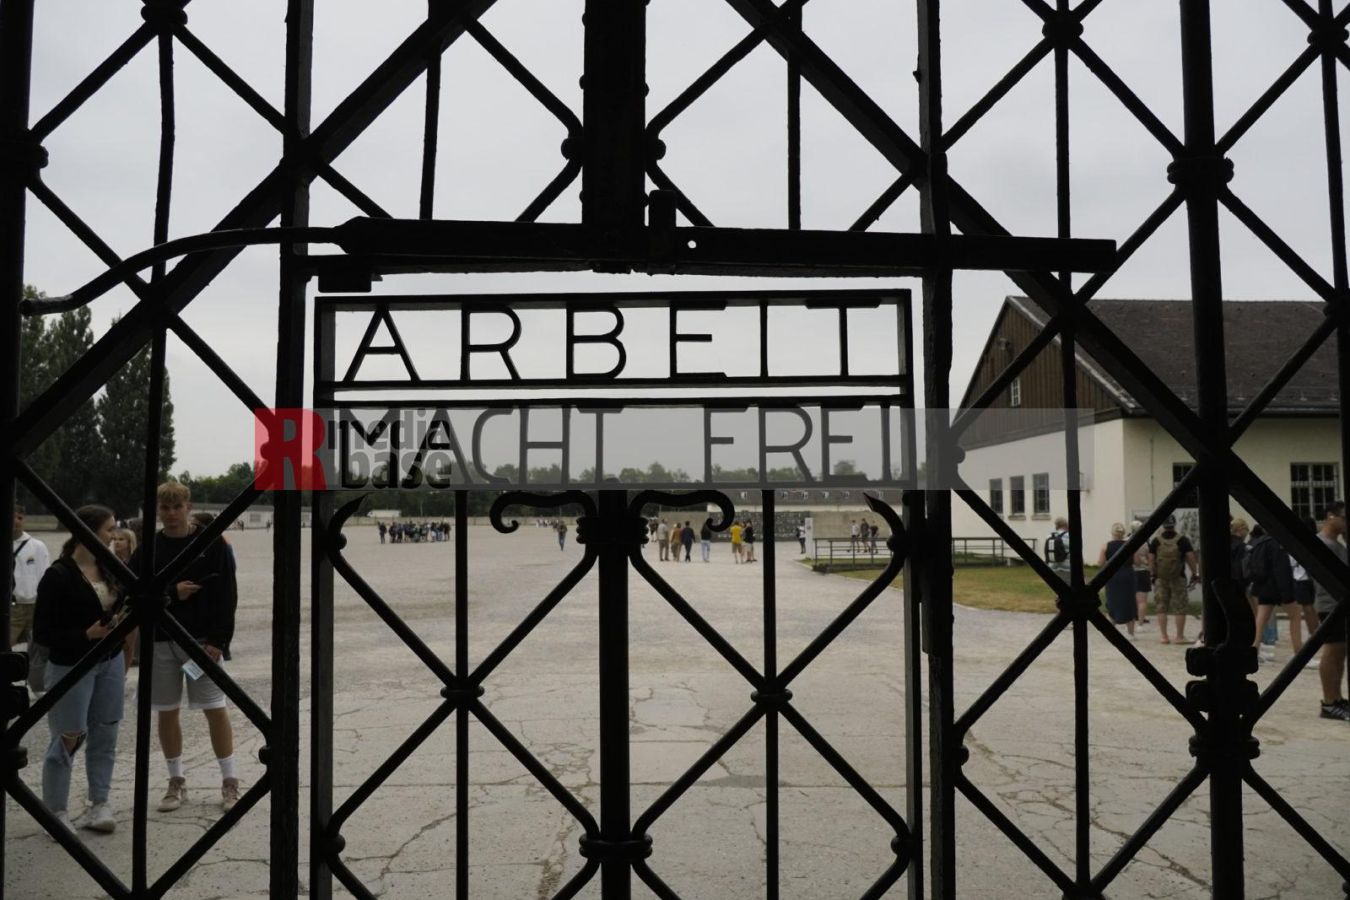 Arbeit macht frei, KZ Gedenkstätte Dachau <i>Bild Ernst Wilhelm Grüter/R-mediabase</i> <br><a href=/confor2/?bld=67456&pst=67427&aid=575&dc=1908&i1=Ernst%20Wilhelm%20Grüter/R-mediabase>Anfrage Download Bild 67456</a>  <a href=/wp-admin/post.php?post=67456&action=edit> / Edit</a><br><a href=/?p=67427>Zum Beitrag 67427</a>